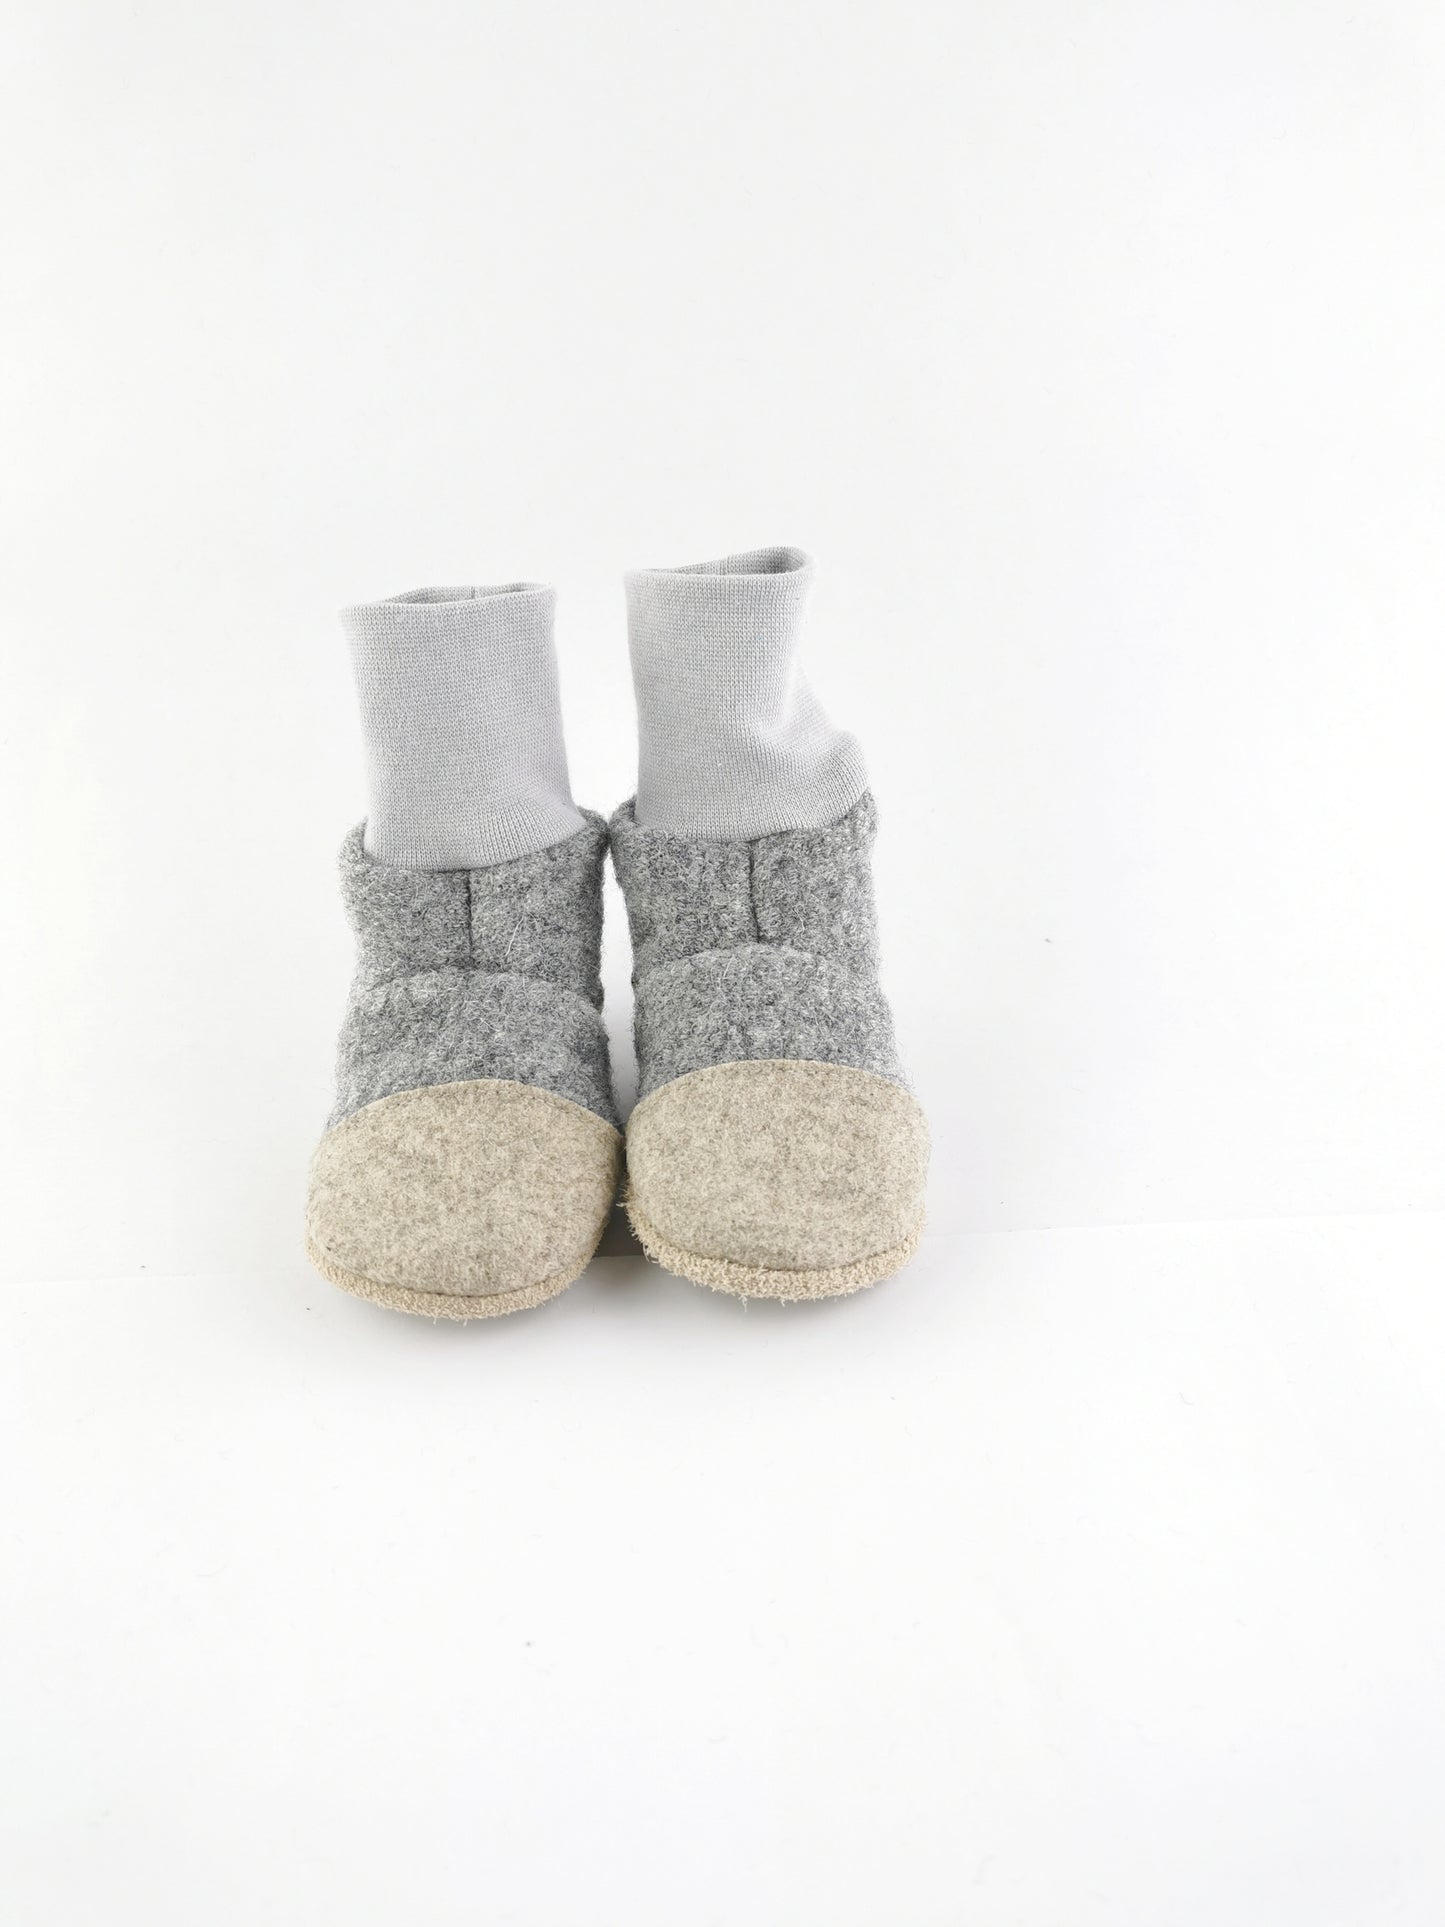 Hohe Puschen aus Wolle in grau für Kinder